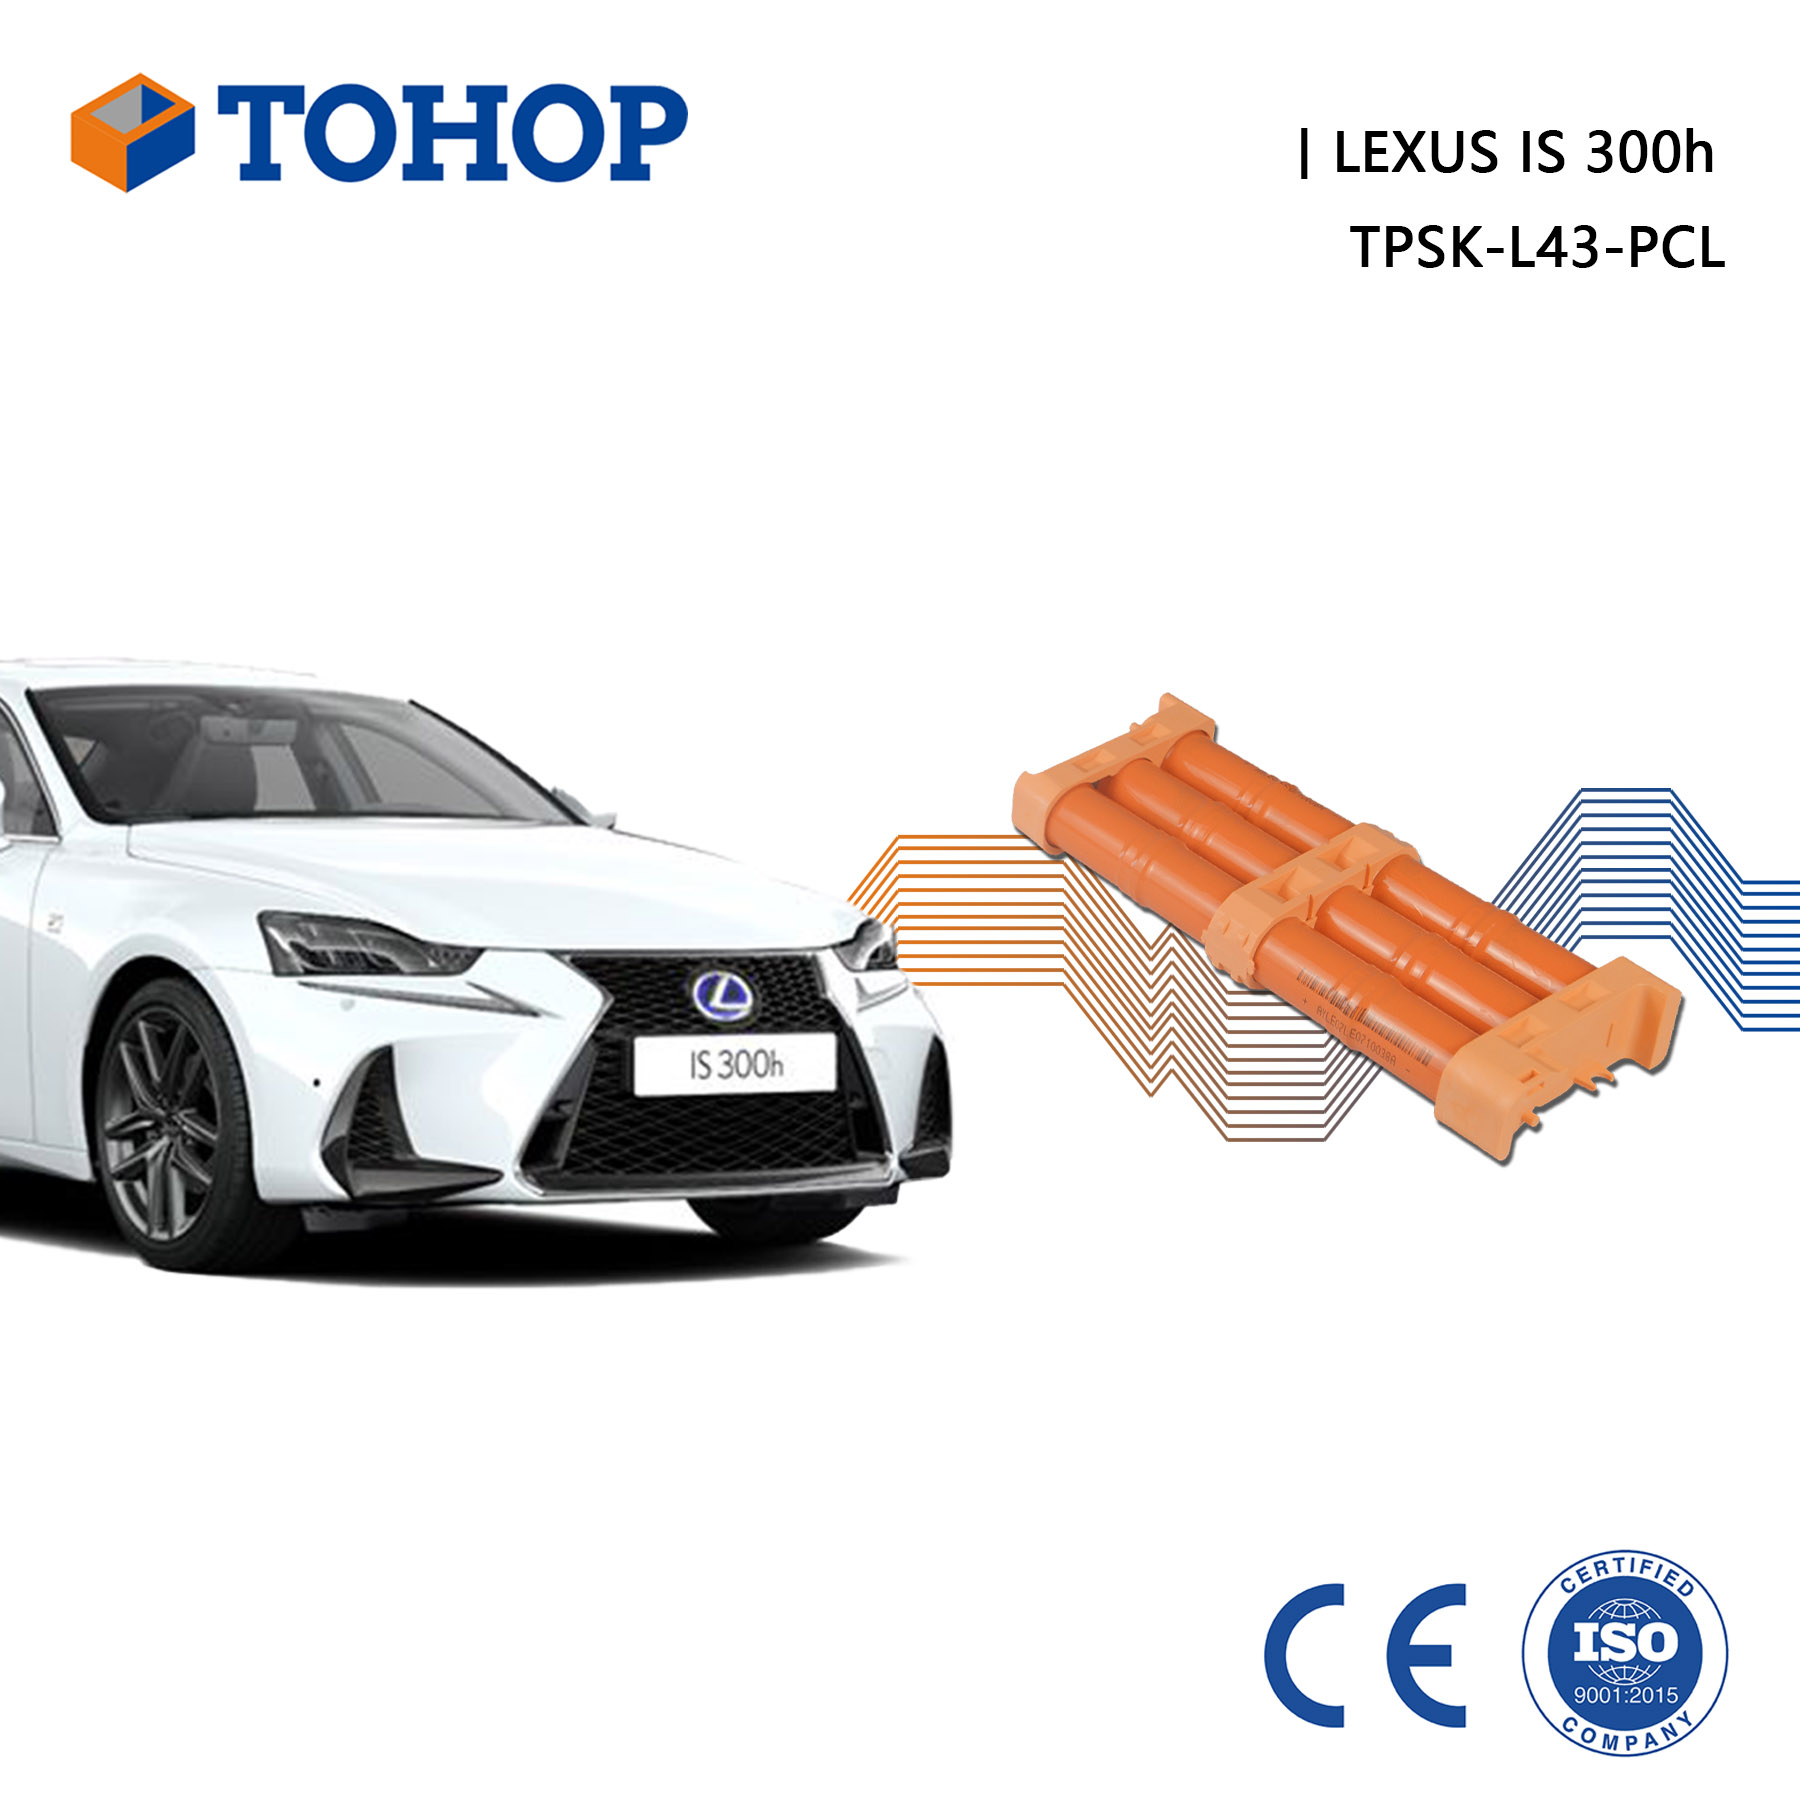 Lexus est une batterie hybride 300h